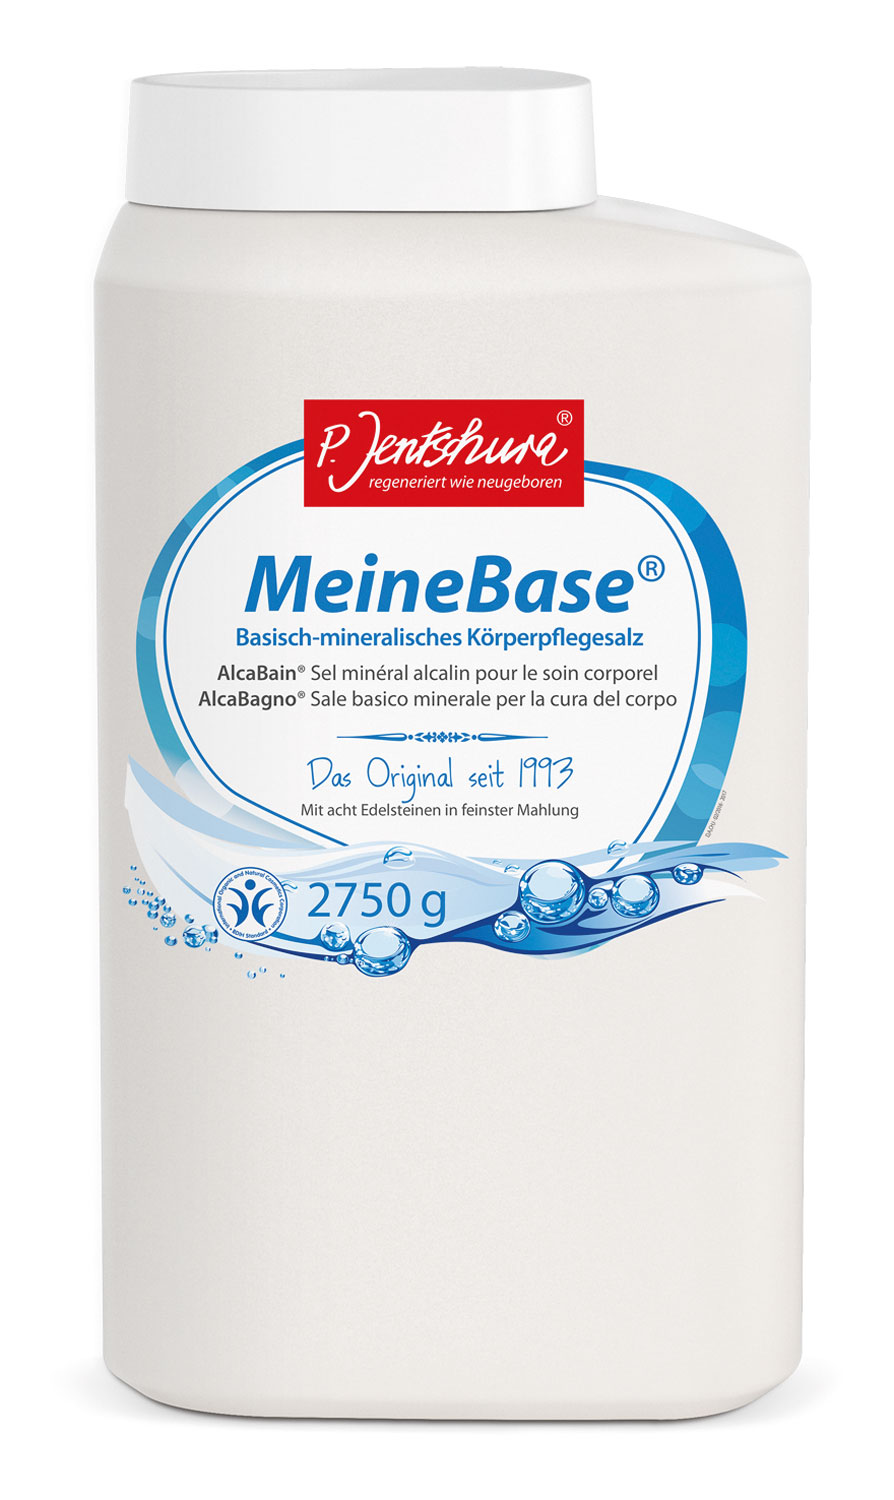 MeineBase Badesalz (alkaline bath salt) 2750 g